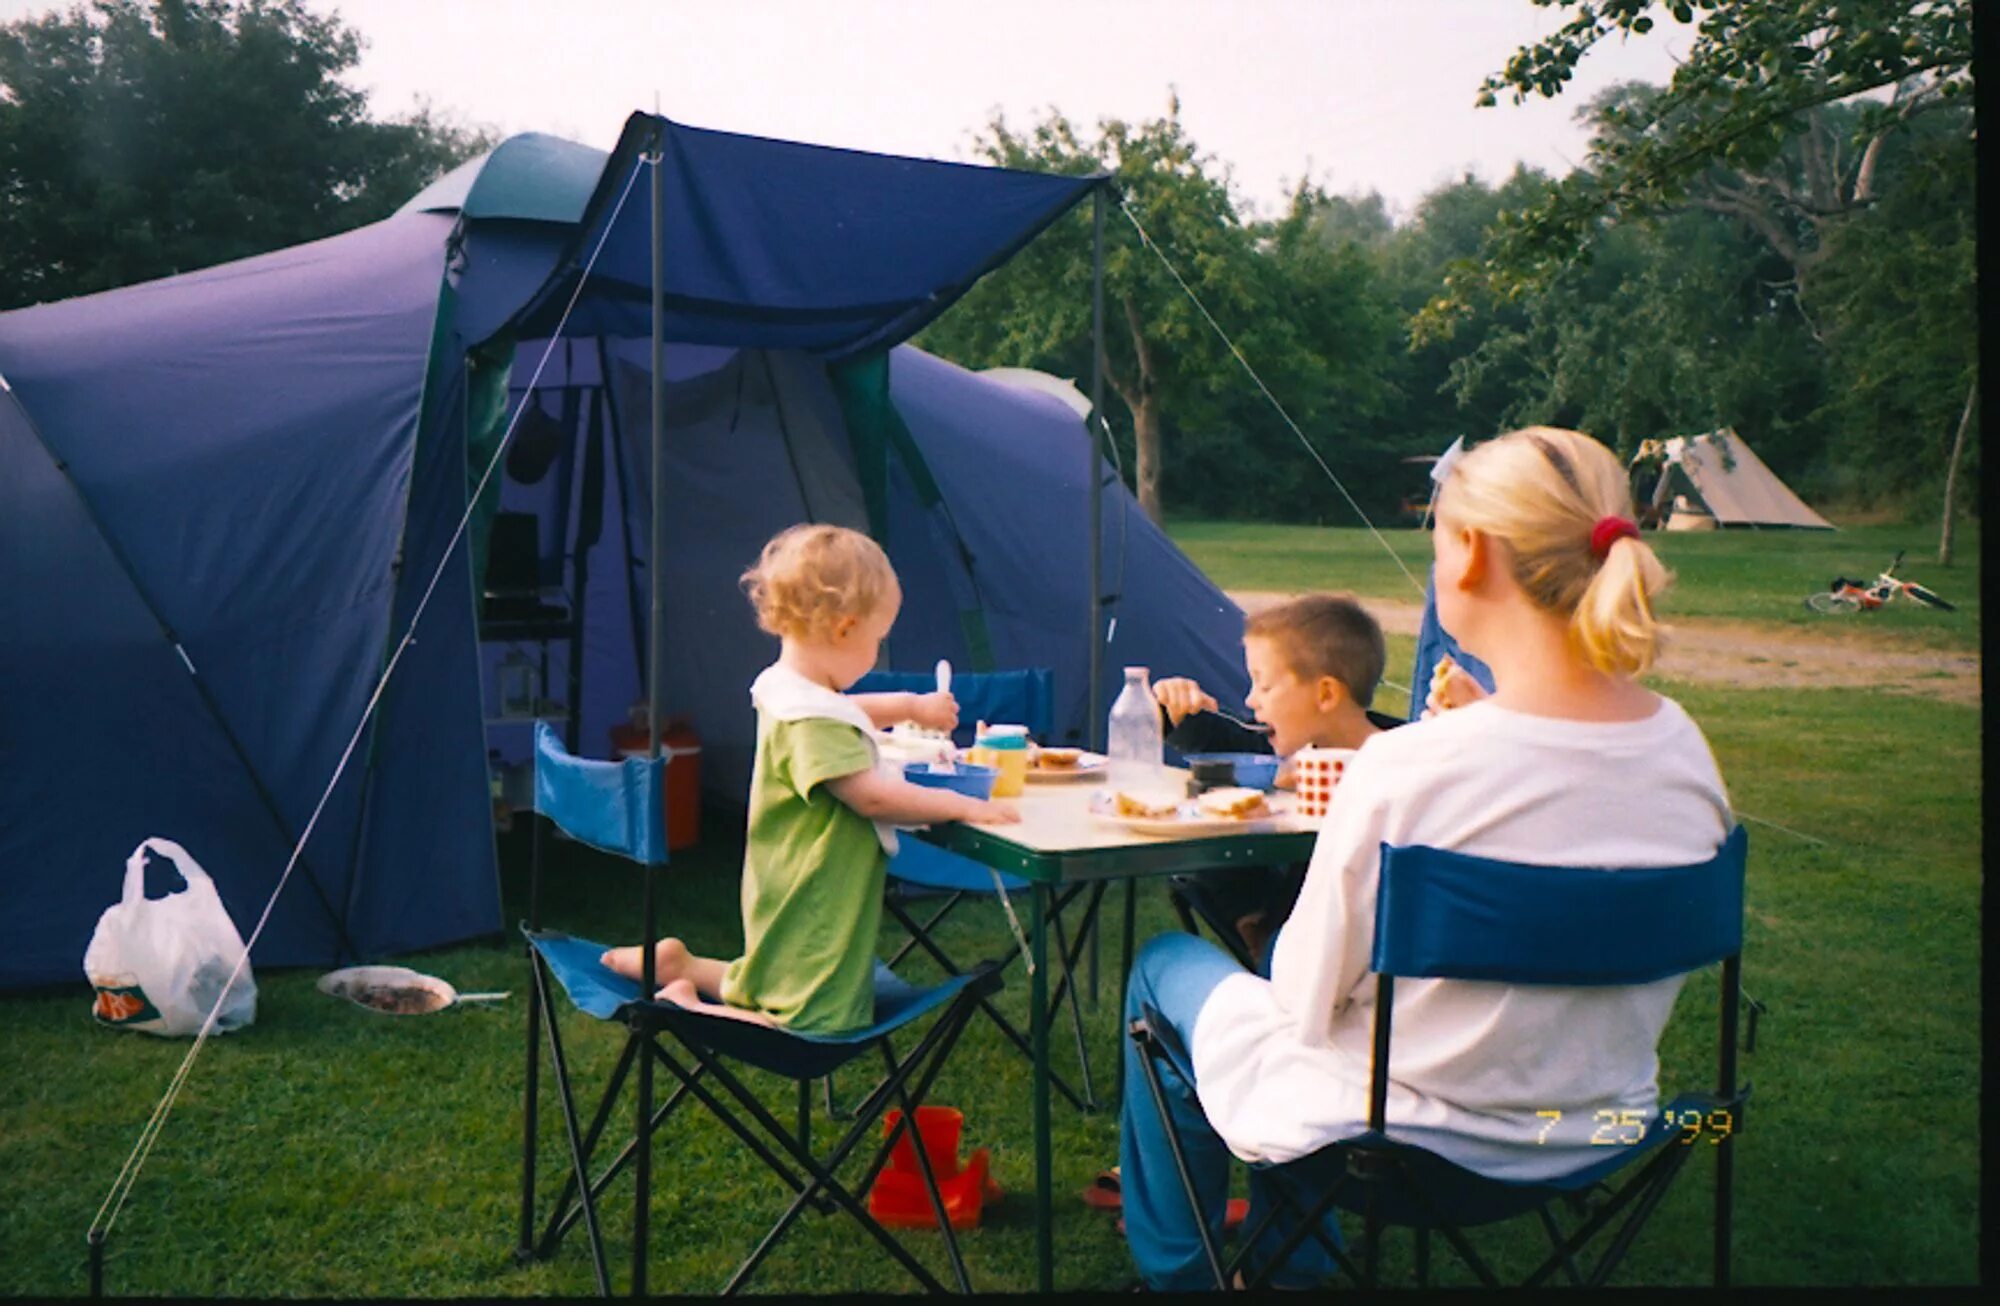 When we go camping. Кемпинг с семьей. Палаточный лагерь для семьи. Семья в палатке. Family with Kids Outdoor Camping.